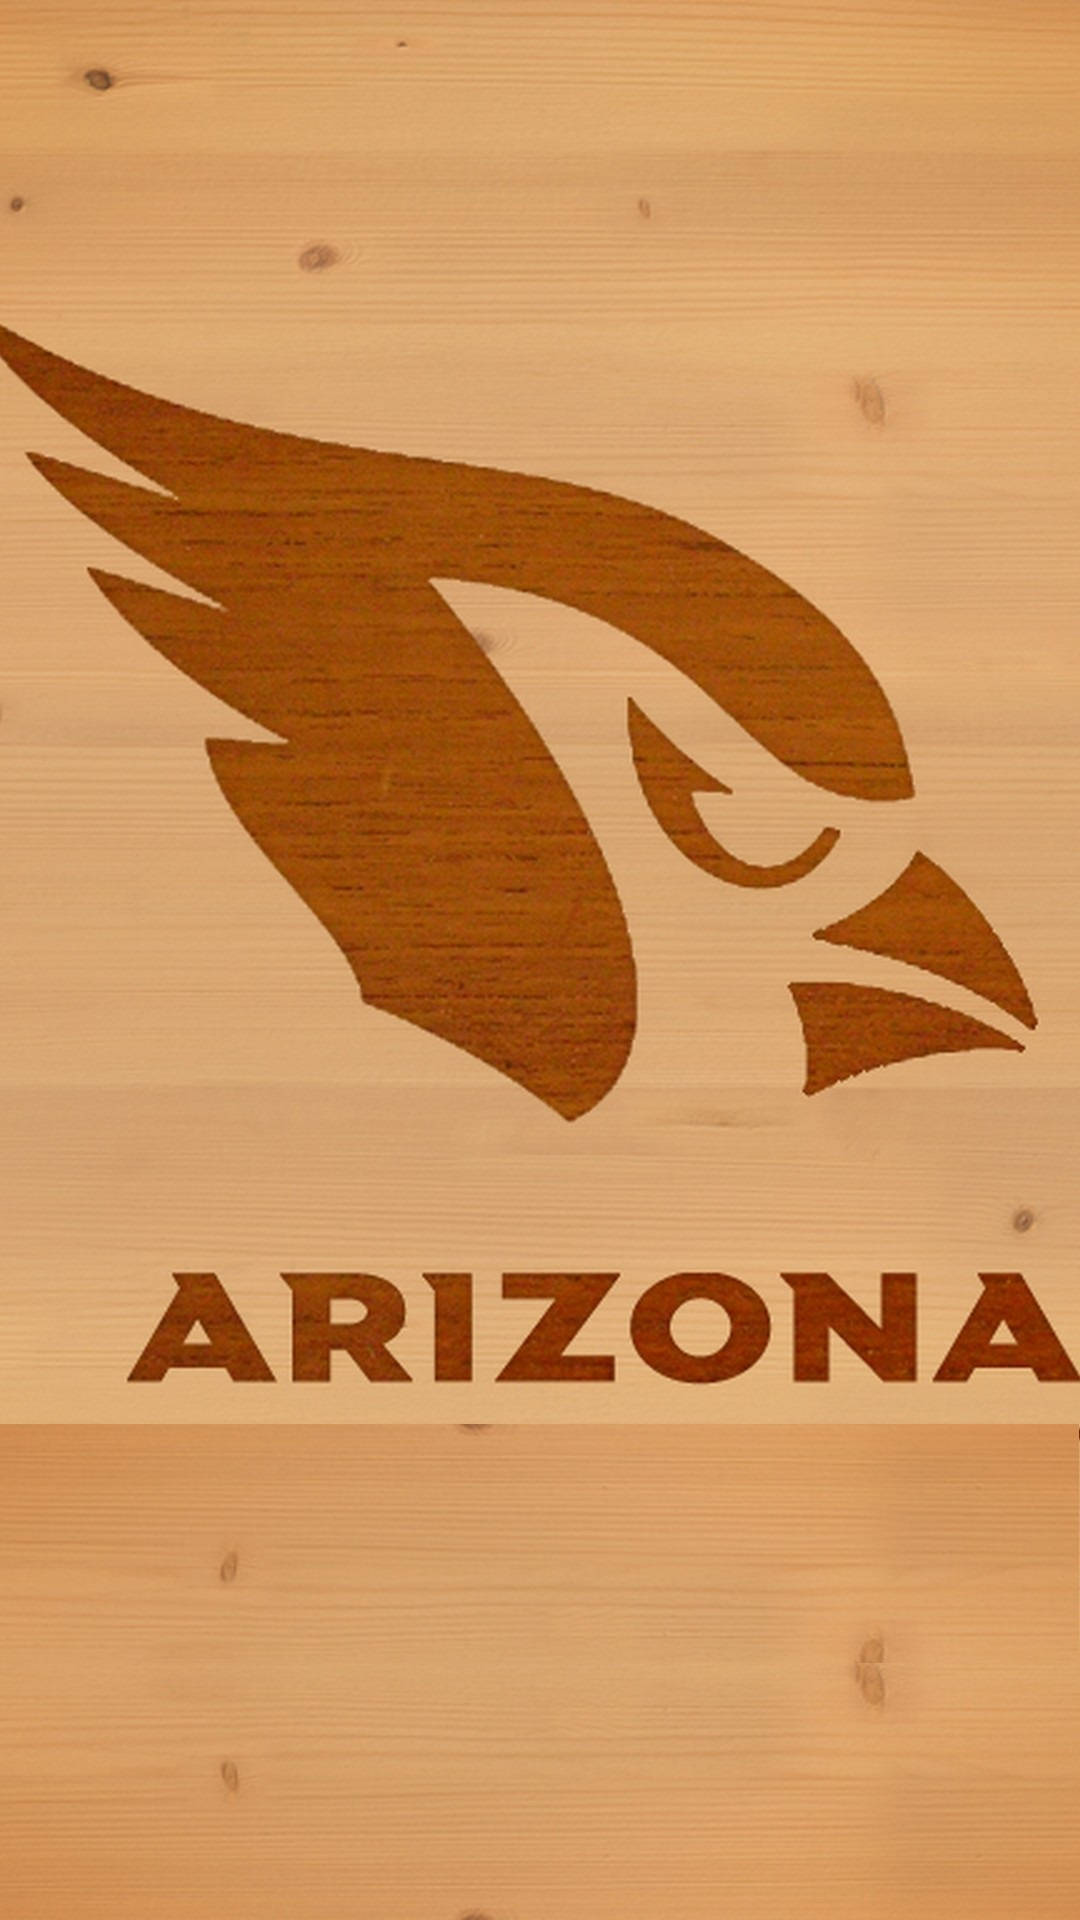 Arizona Cardinals Logo On Wood Background